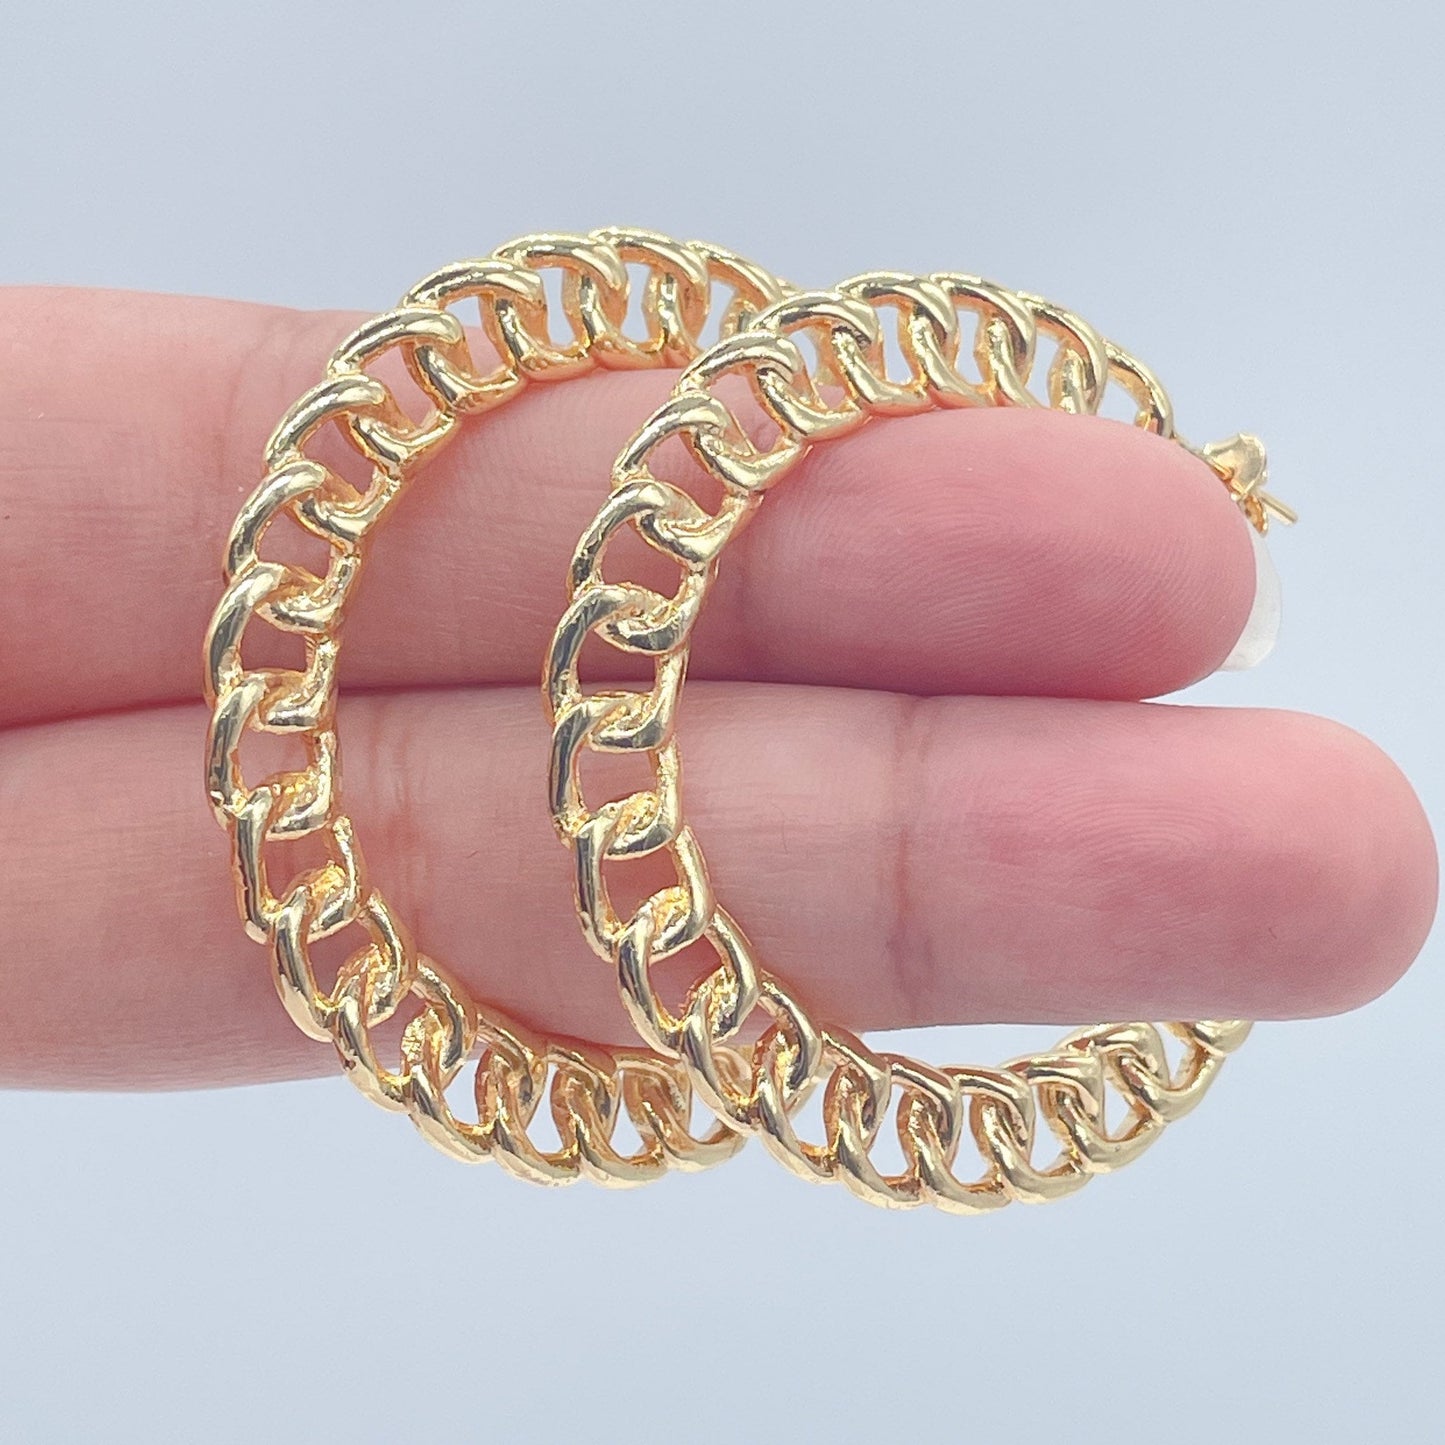 18k Gold Layered Curb Link Hoop Earrings, C-Hoop Earrings Cuban Link Chain,